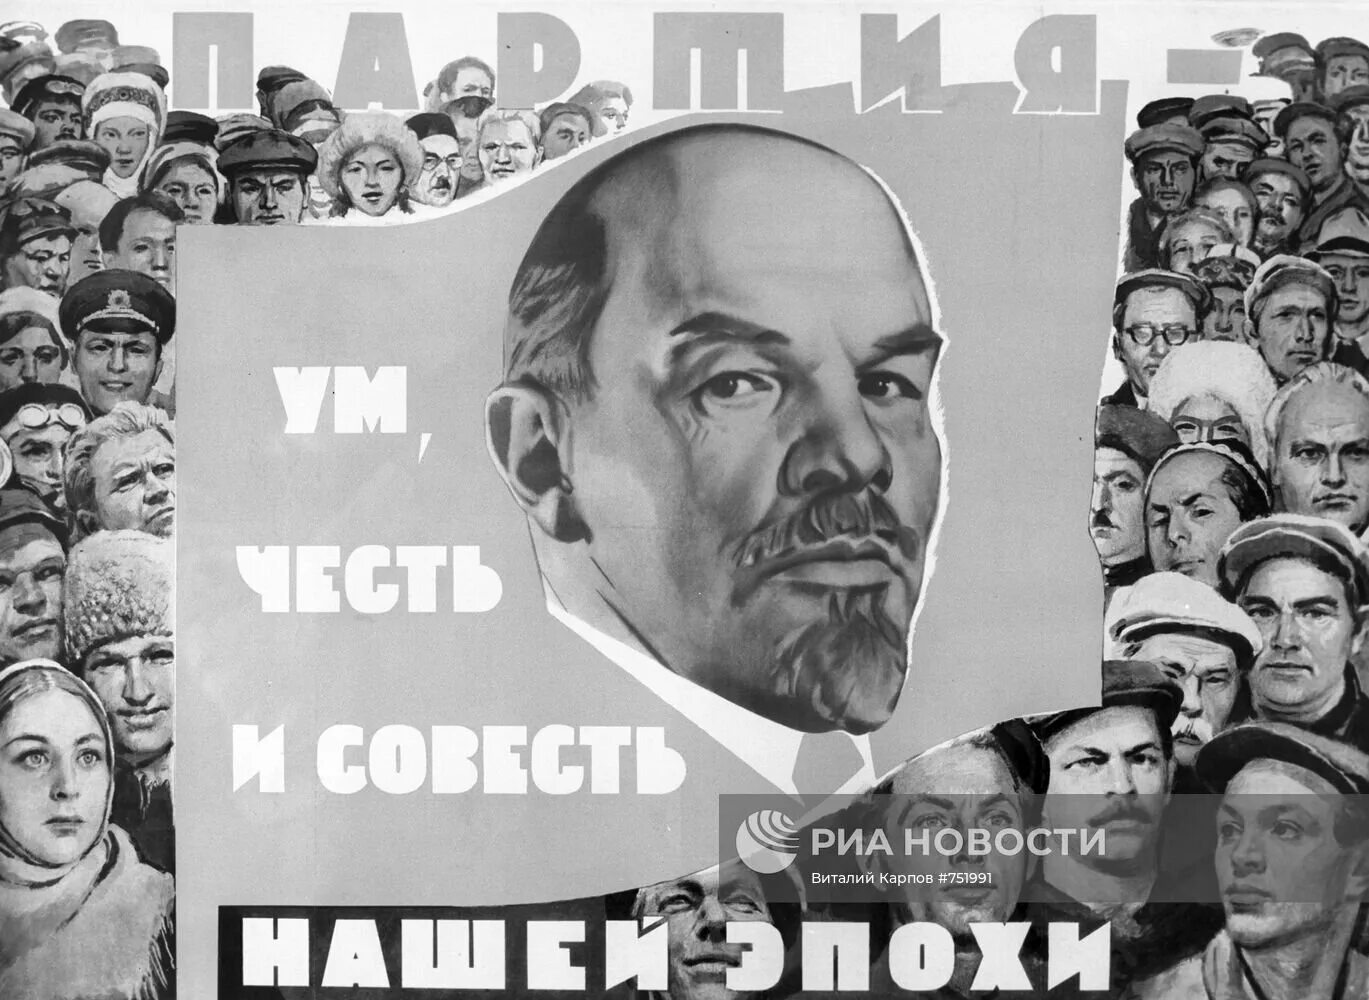 Партия ум честь и совесть нашей эпохи плакат. Ум честь и совесть нашей эпохи. КПСС ум честь и совесть нашей эпохи. Ленин ум честь и совесть нашей эпохи.